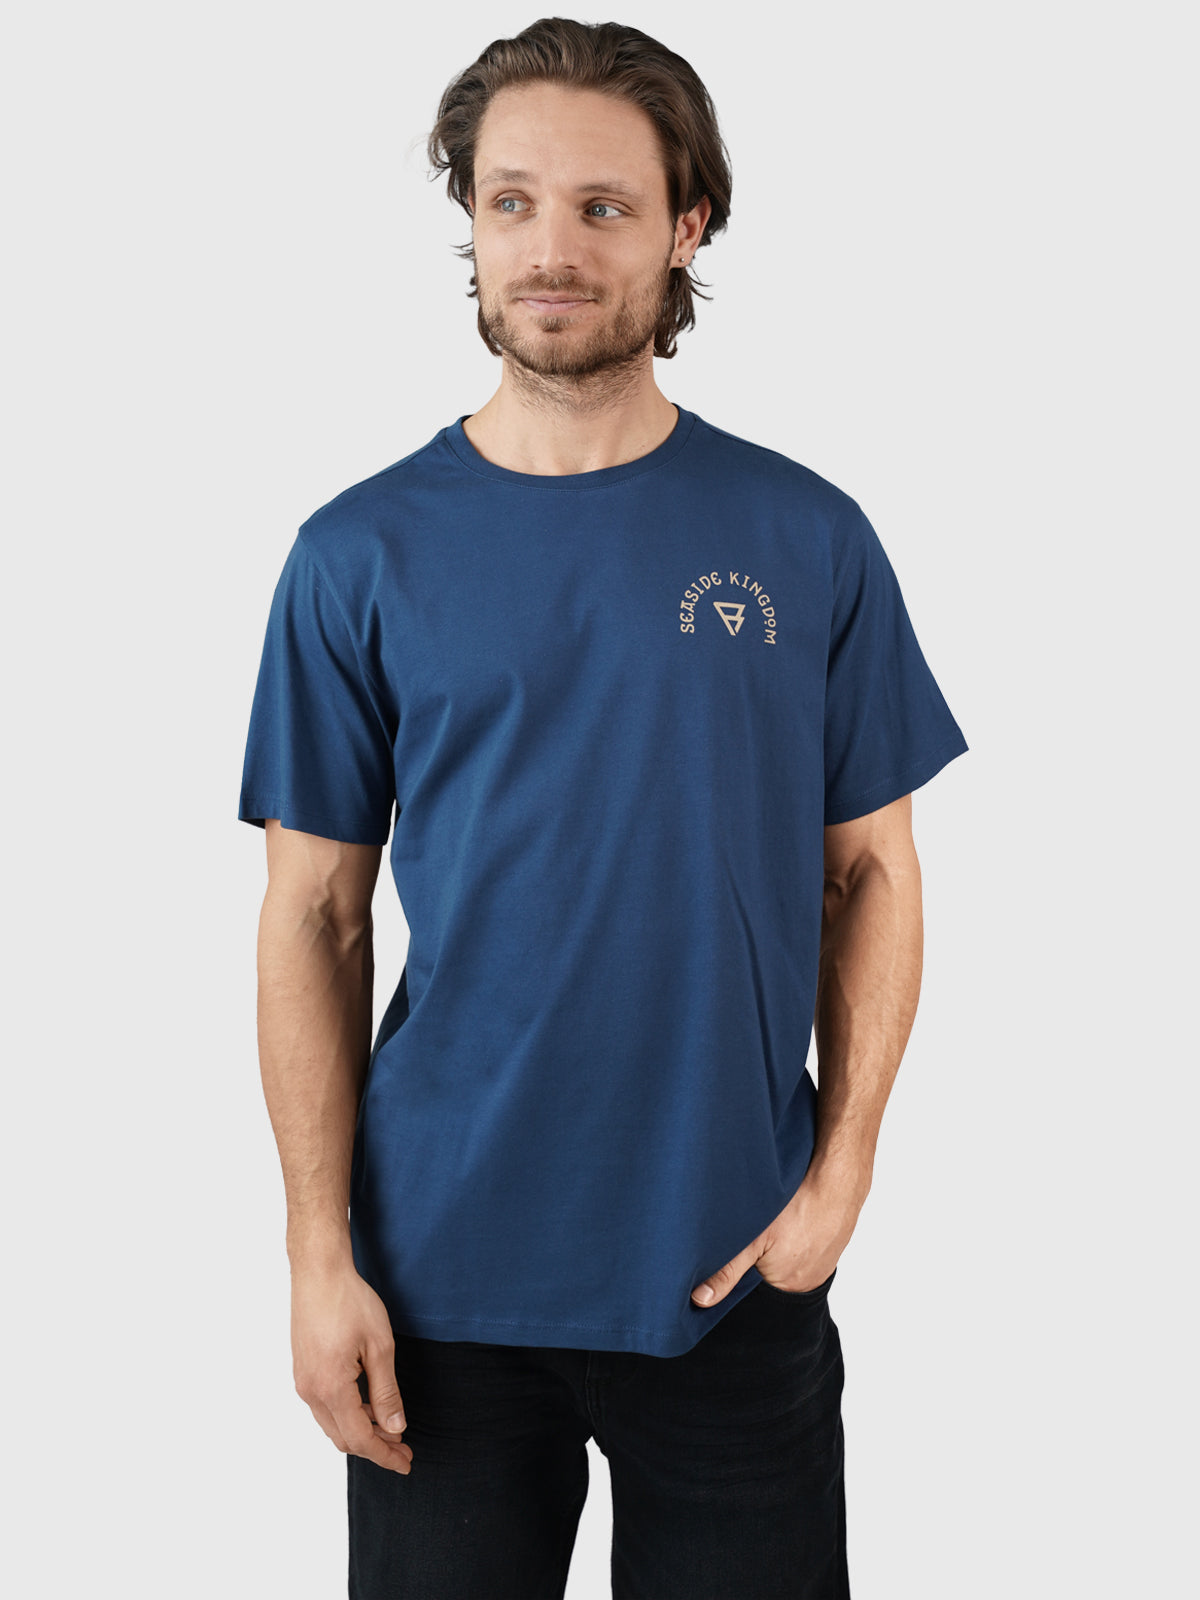 Kingfin Herren T-shirt | Blau